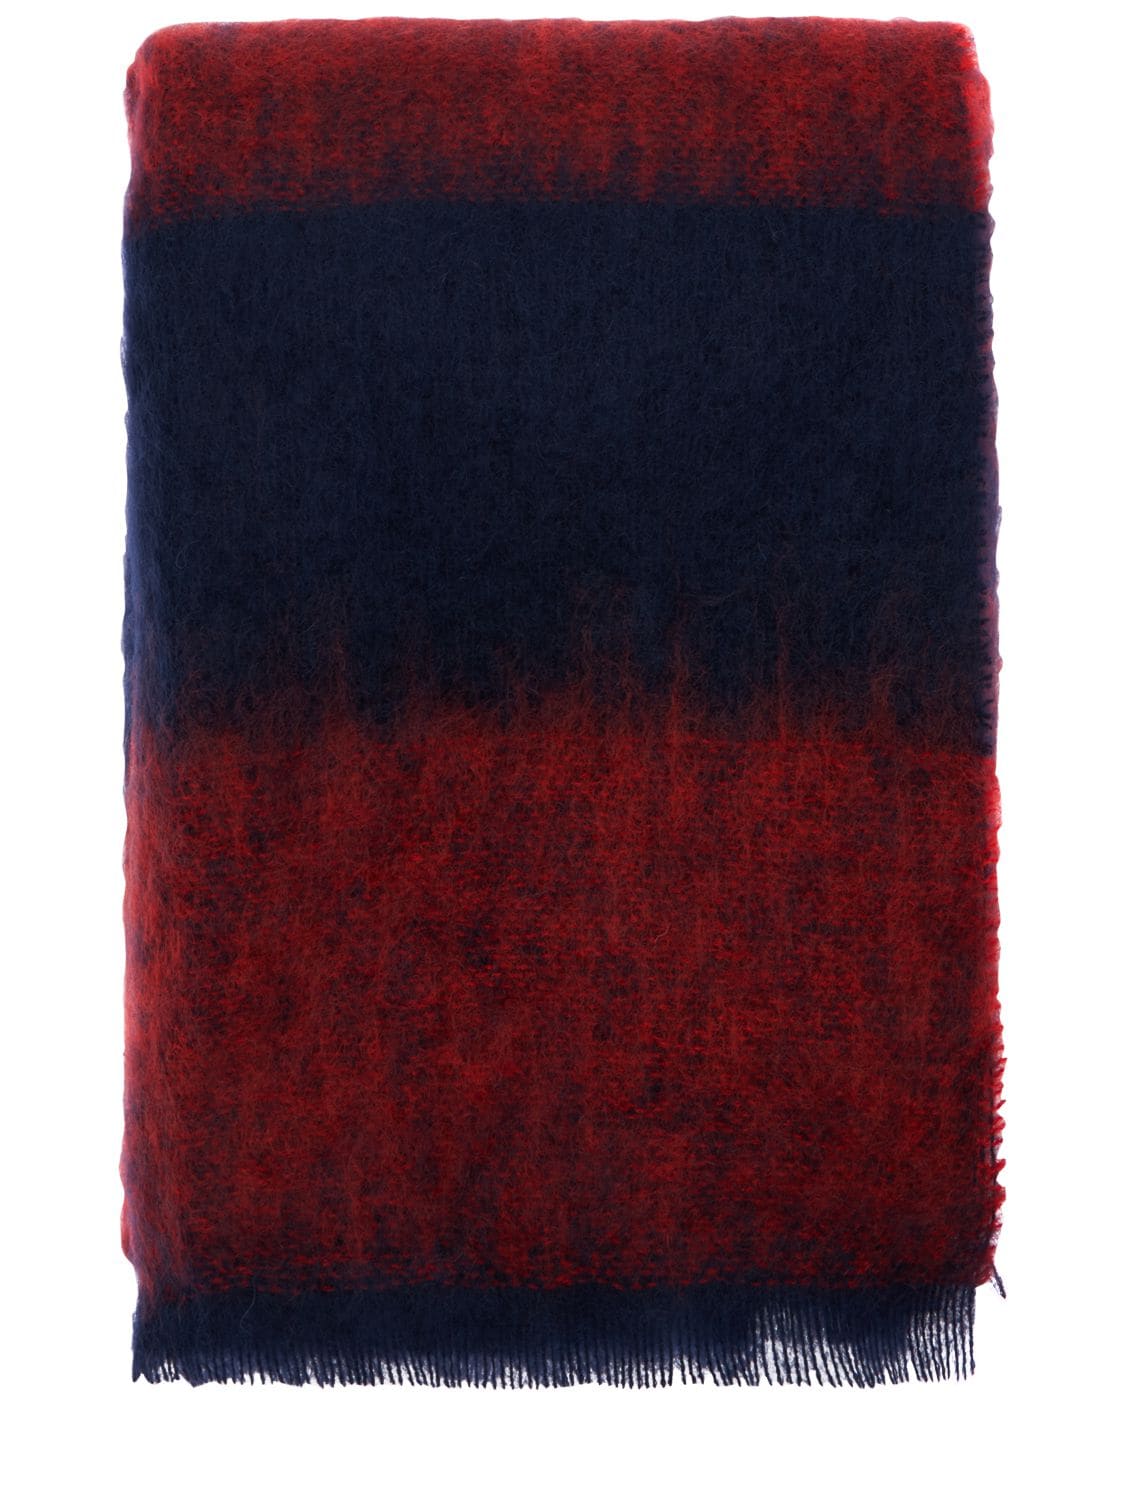 Hay Mohair & Wool Blanket In Red,blue